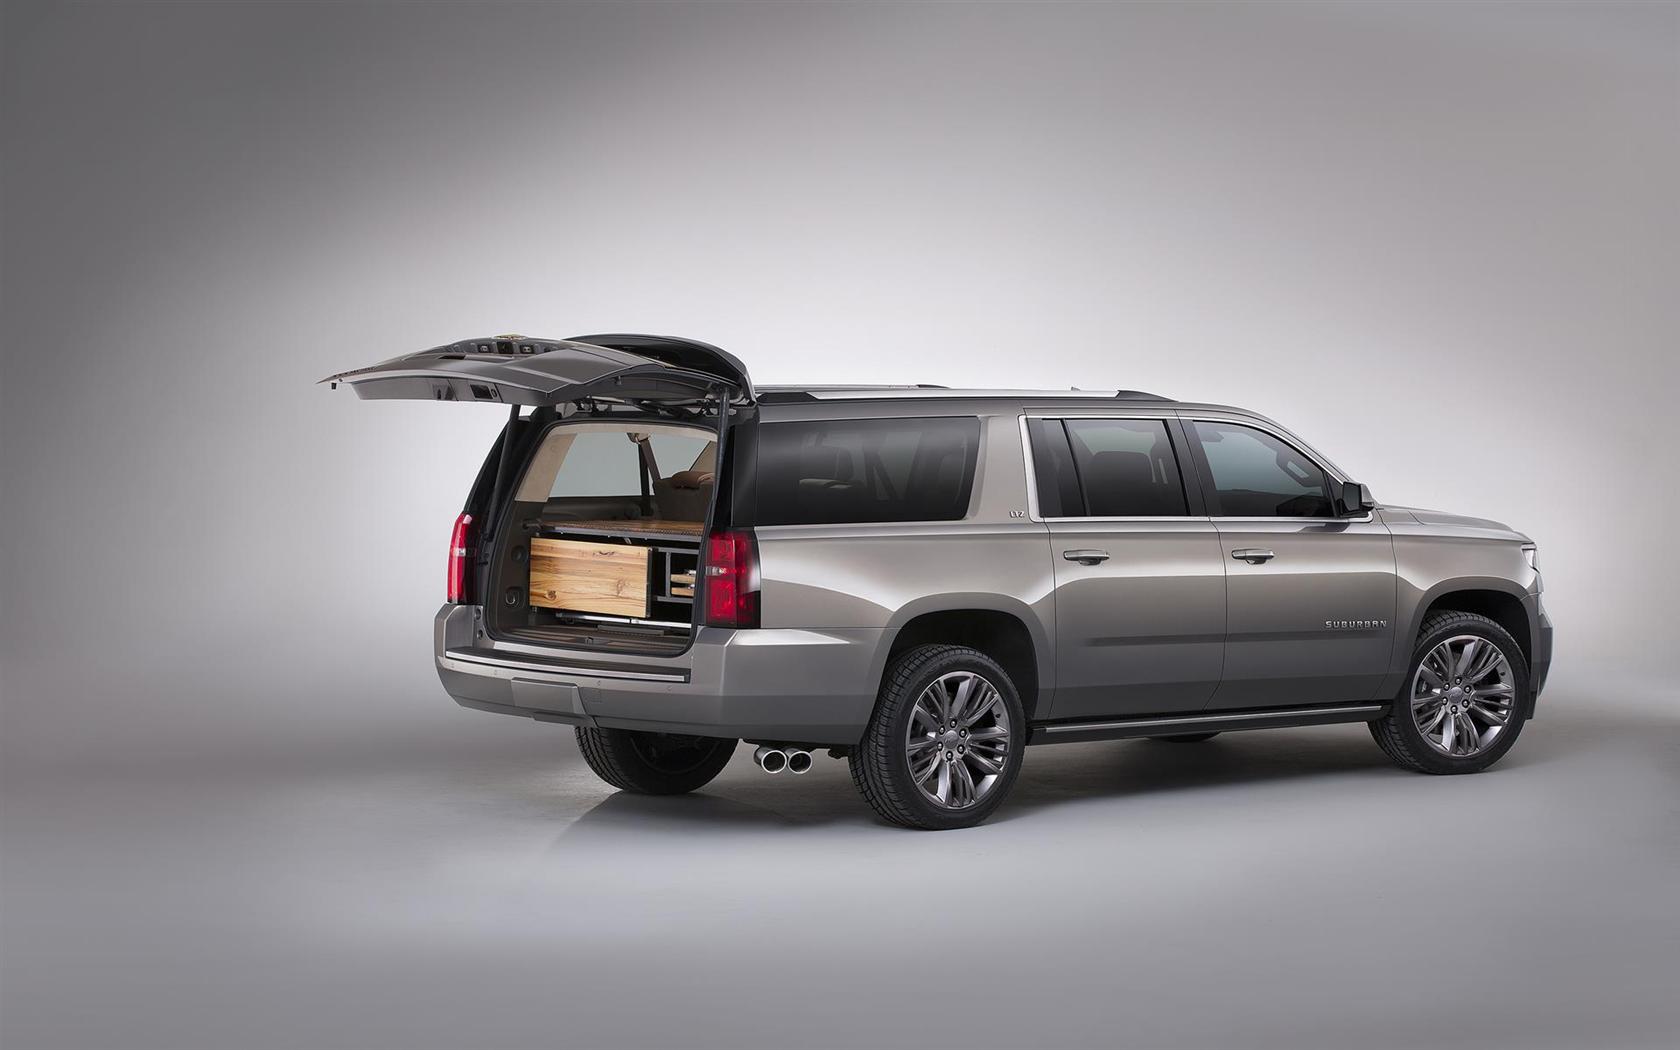 2015 Chevrolet Suburban Premium Outdoors Concept